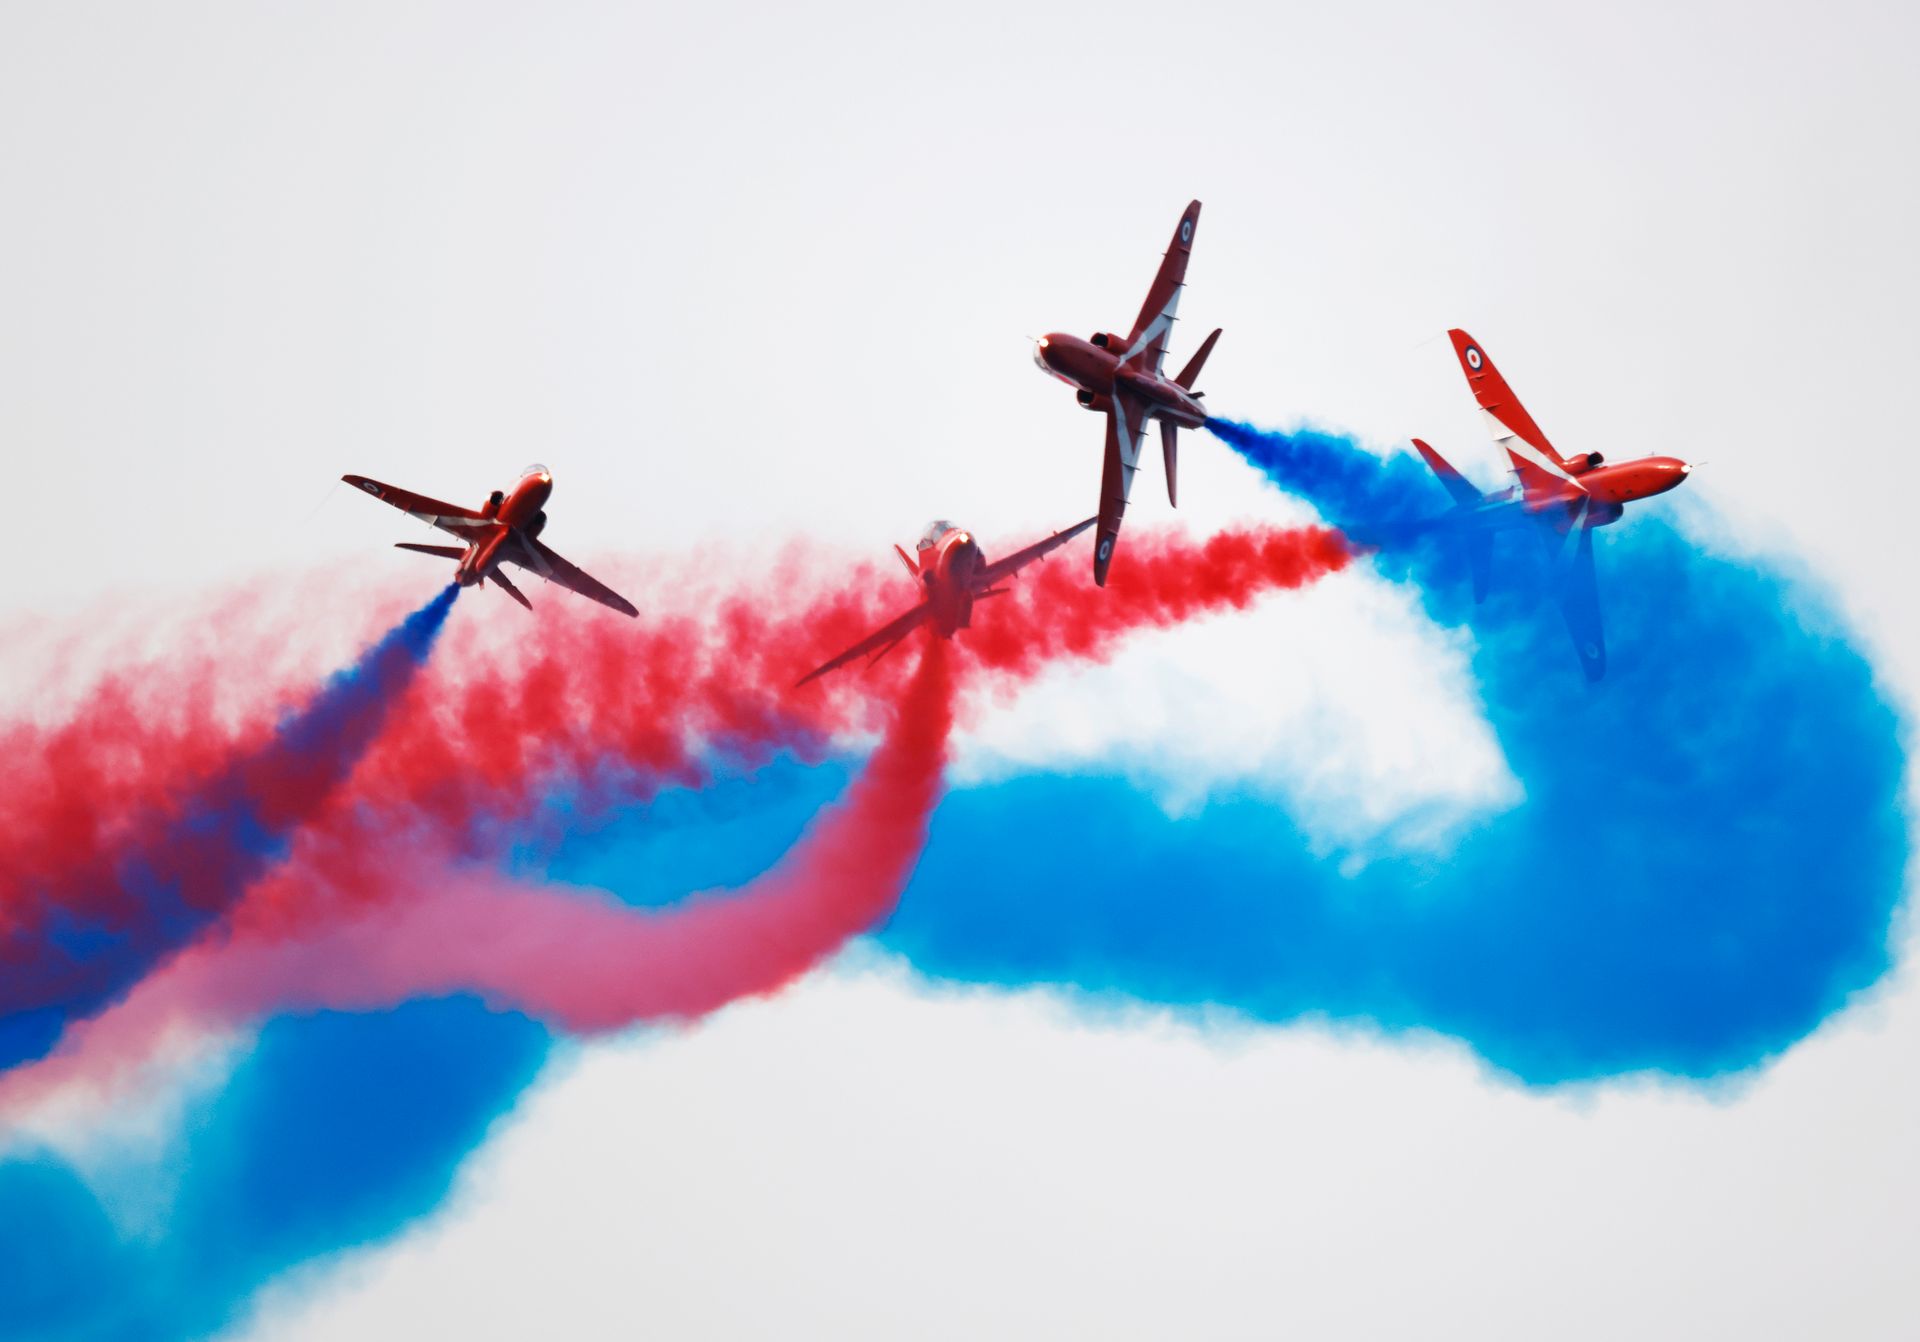 Fire fly gjør akrobatikk i luften, mens de slipper ut fargepulver som lager røde og blå striper bak flyene.